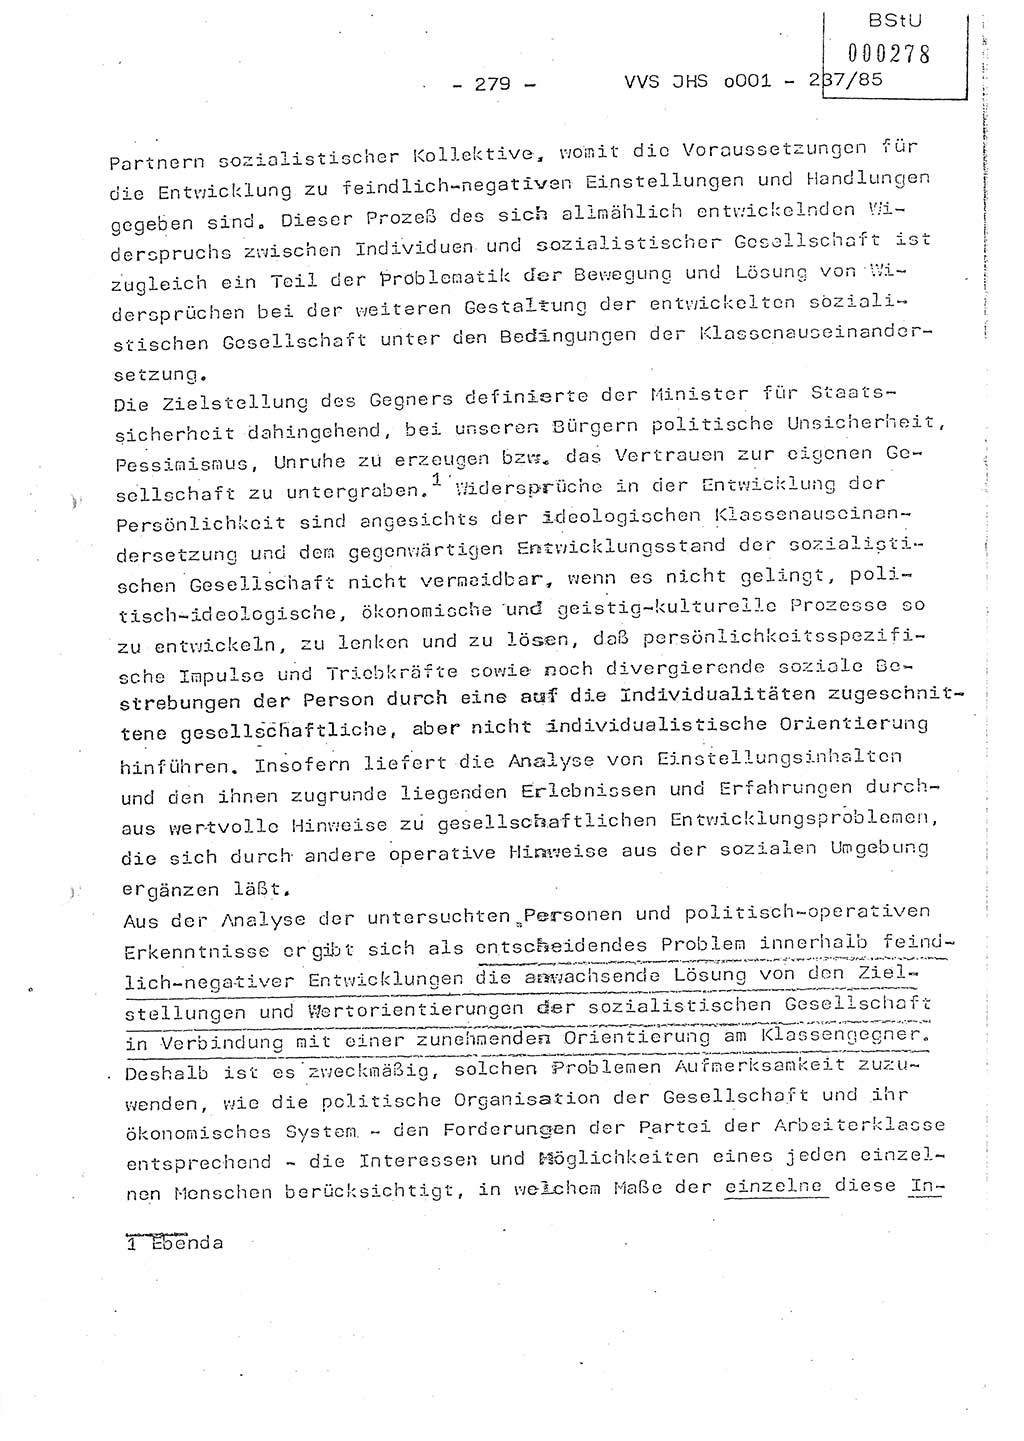 Dissertation Oberstleutnant Peter Jakulski (JHS), Oberstleutnat Christian Rudolph (HA Ⅸ), Major Horst Böttger (ZMD), Major Wolfgang Grüneberg (JHS), Major Albert Meutsch (JHS), Ministerium für Staatssicherheit (MfS) [Deutsche Demokratische Republik (DDR)], Juristische Hochschule (JHS), Vertrauliche Verschlußsache (VVS) o001-237/85, Potsdam 1985, Seite 279 (Diss. MfS DDR JHS VVS o001-237/85 1985, S. 279)